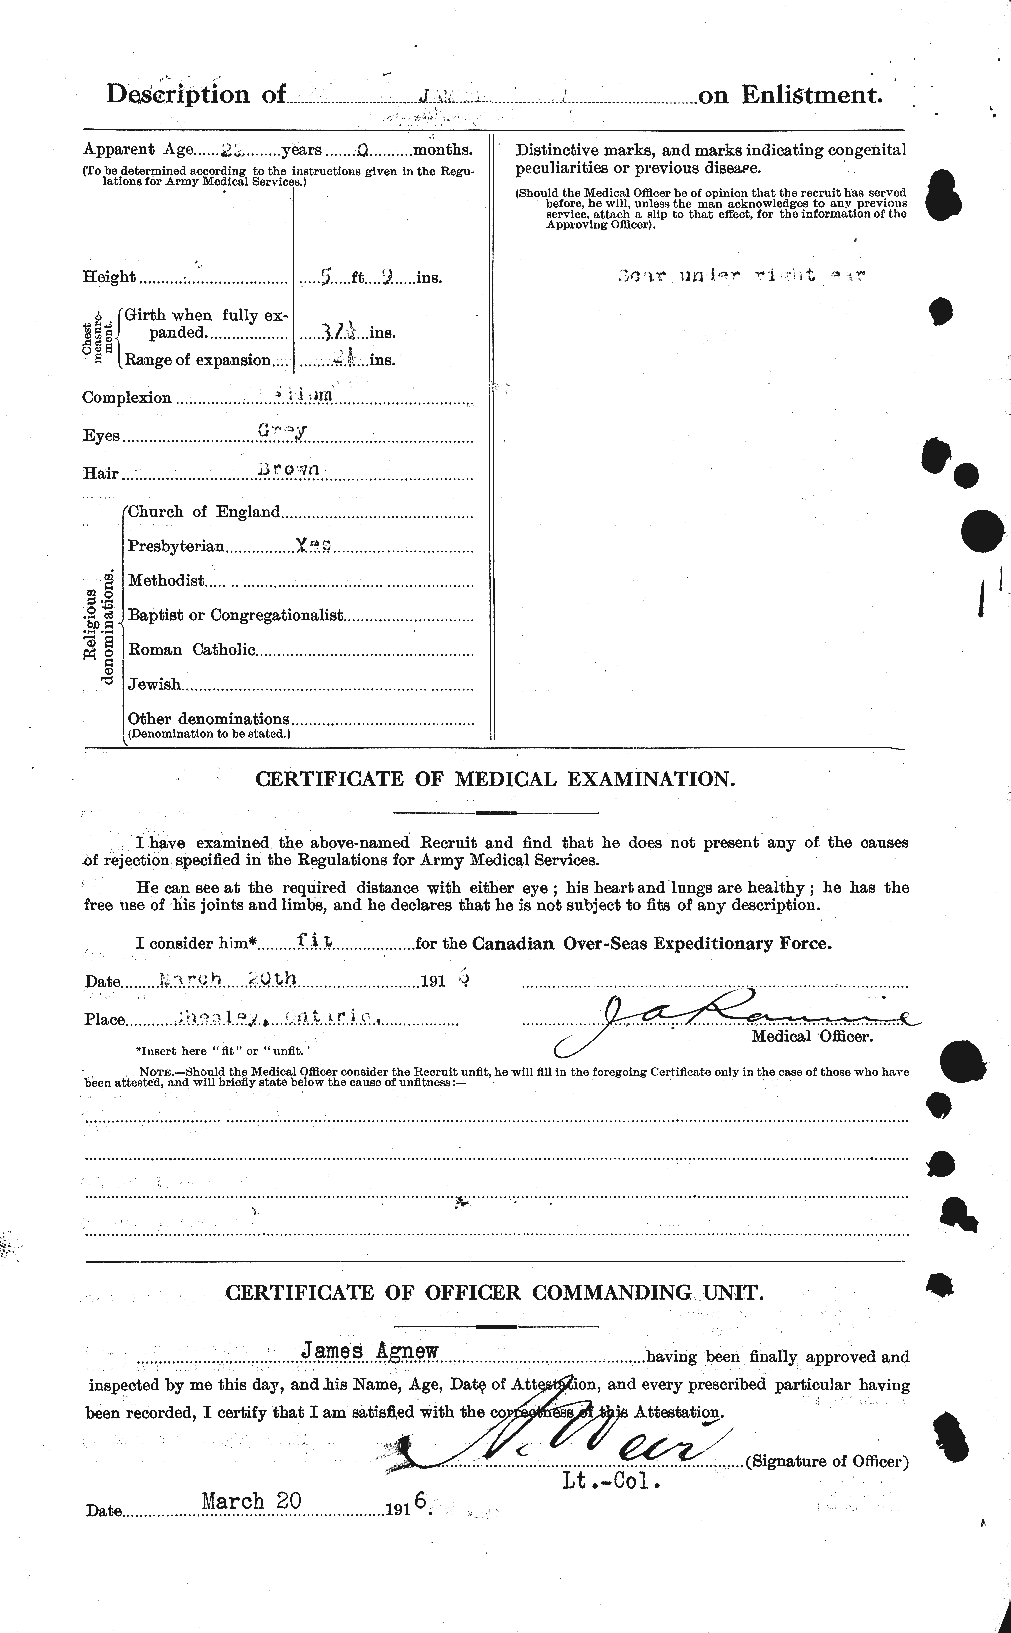 Dossiers du Personnel de la Première Guerre mondiale - CEC 203771b